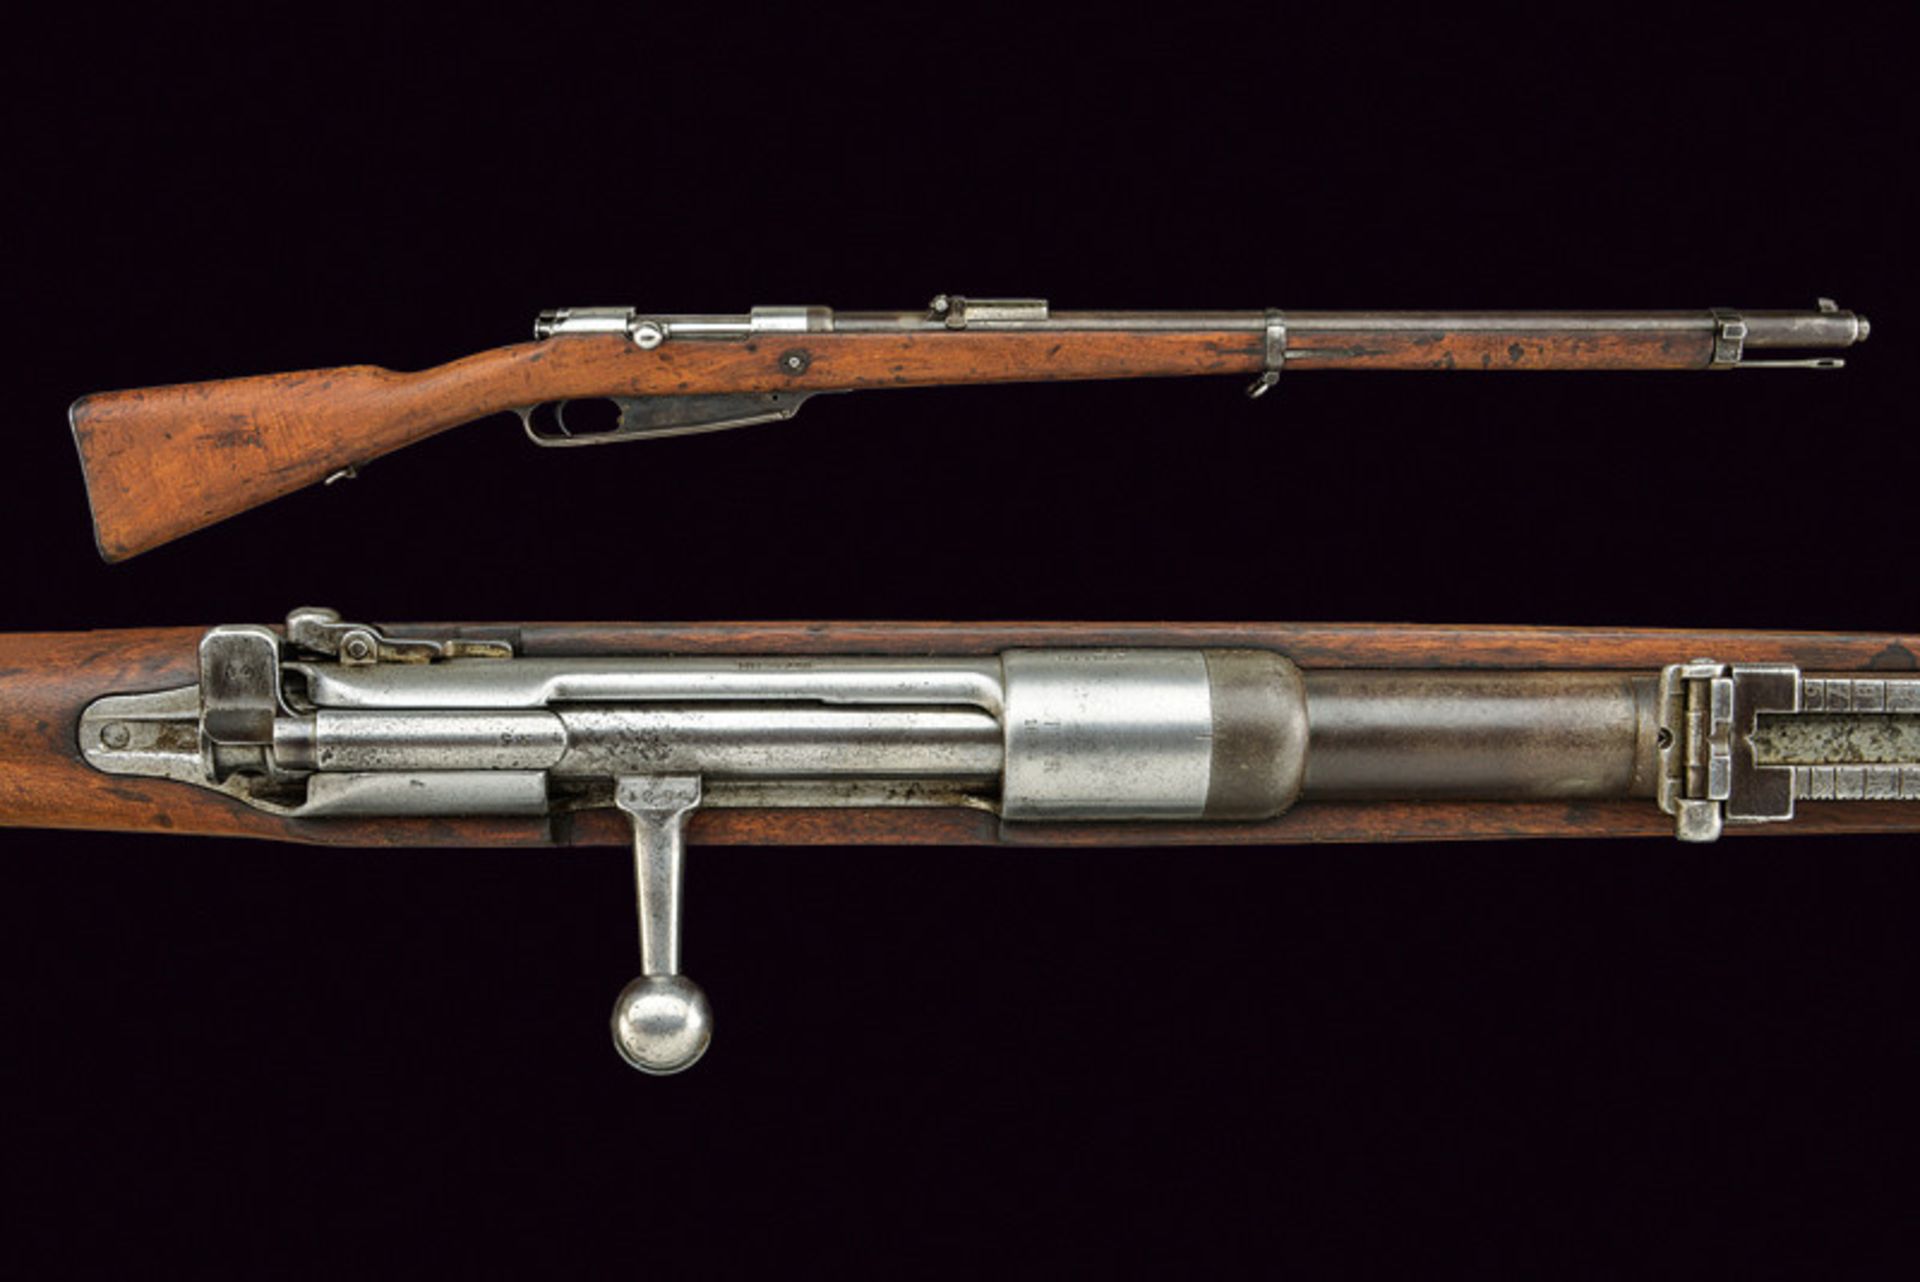 An 1888 model breech loading rifle